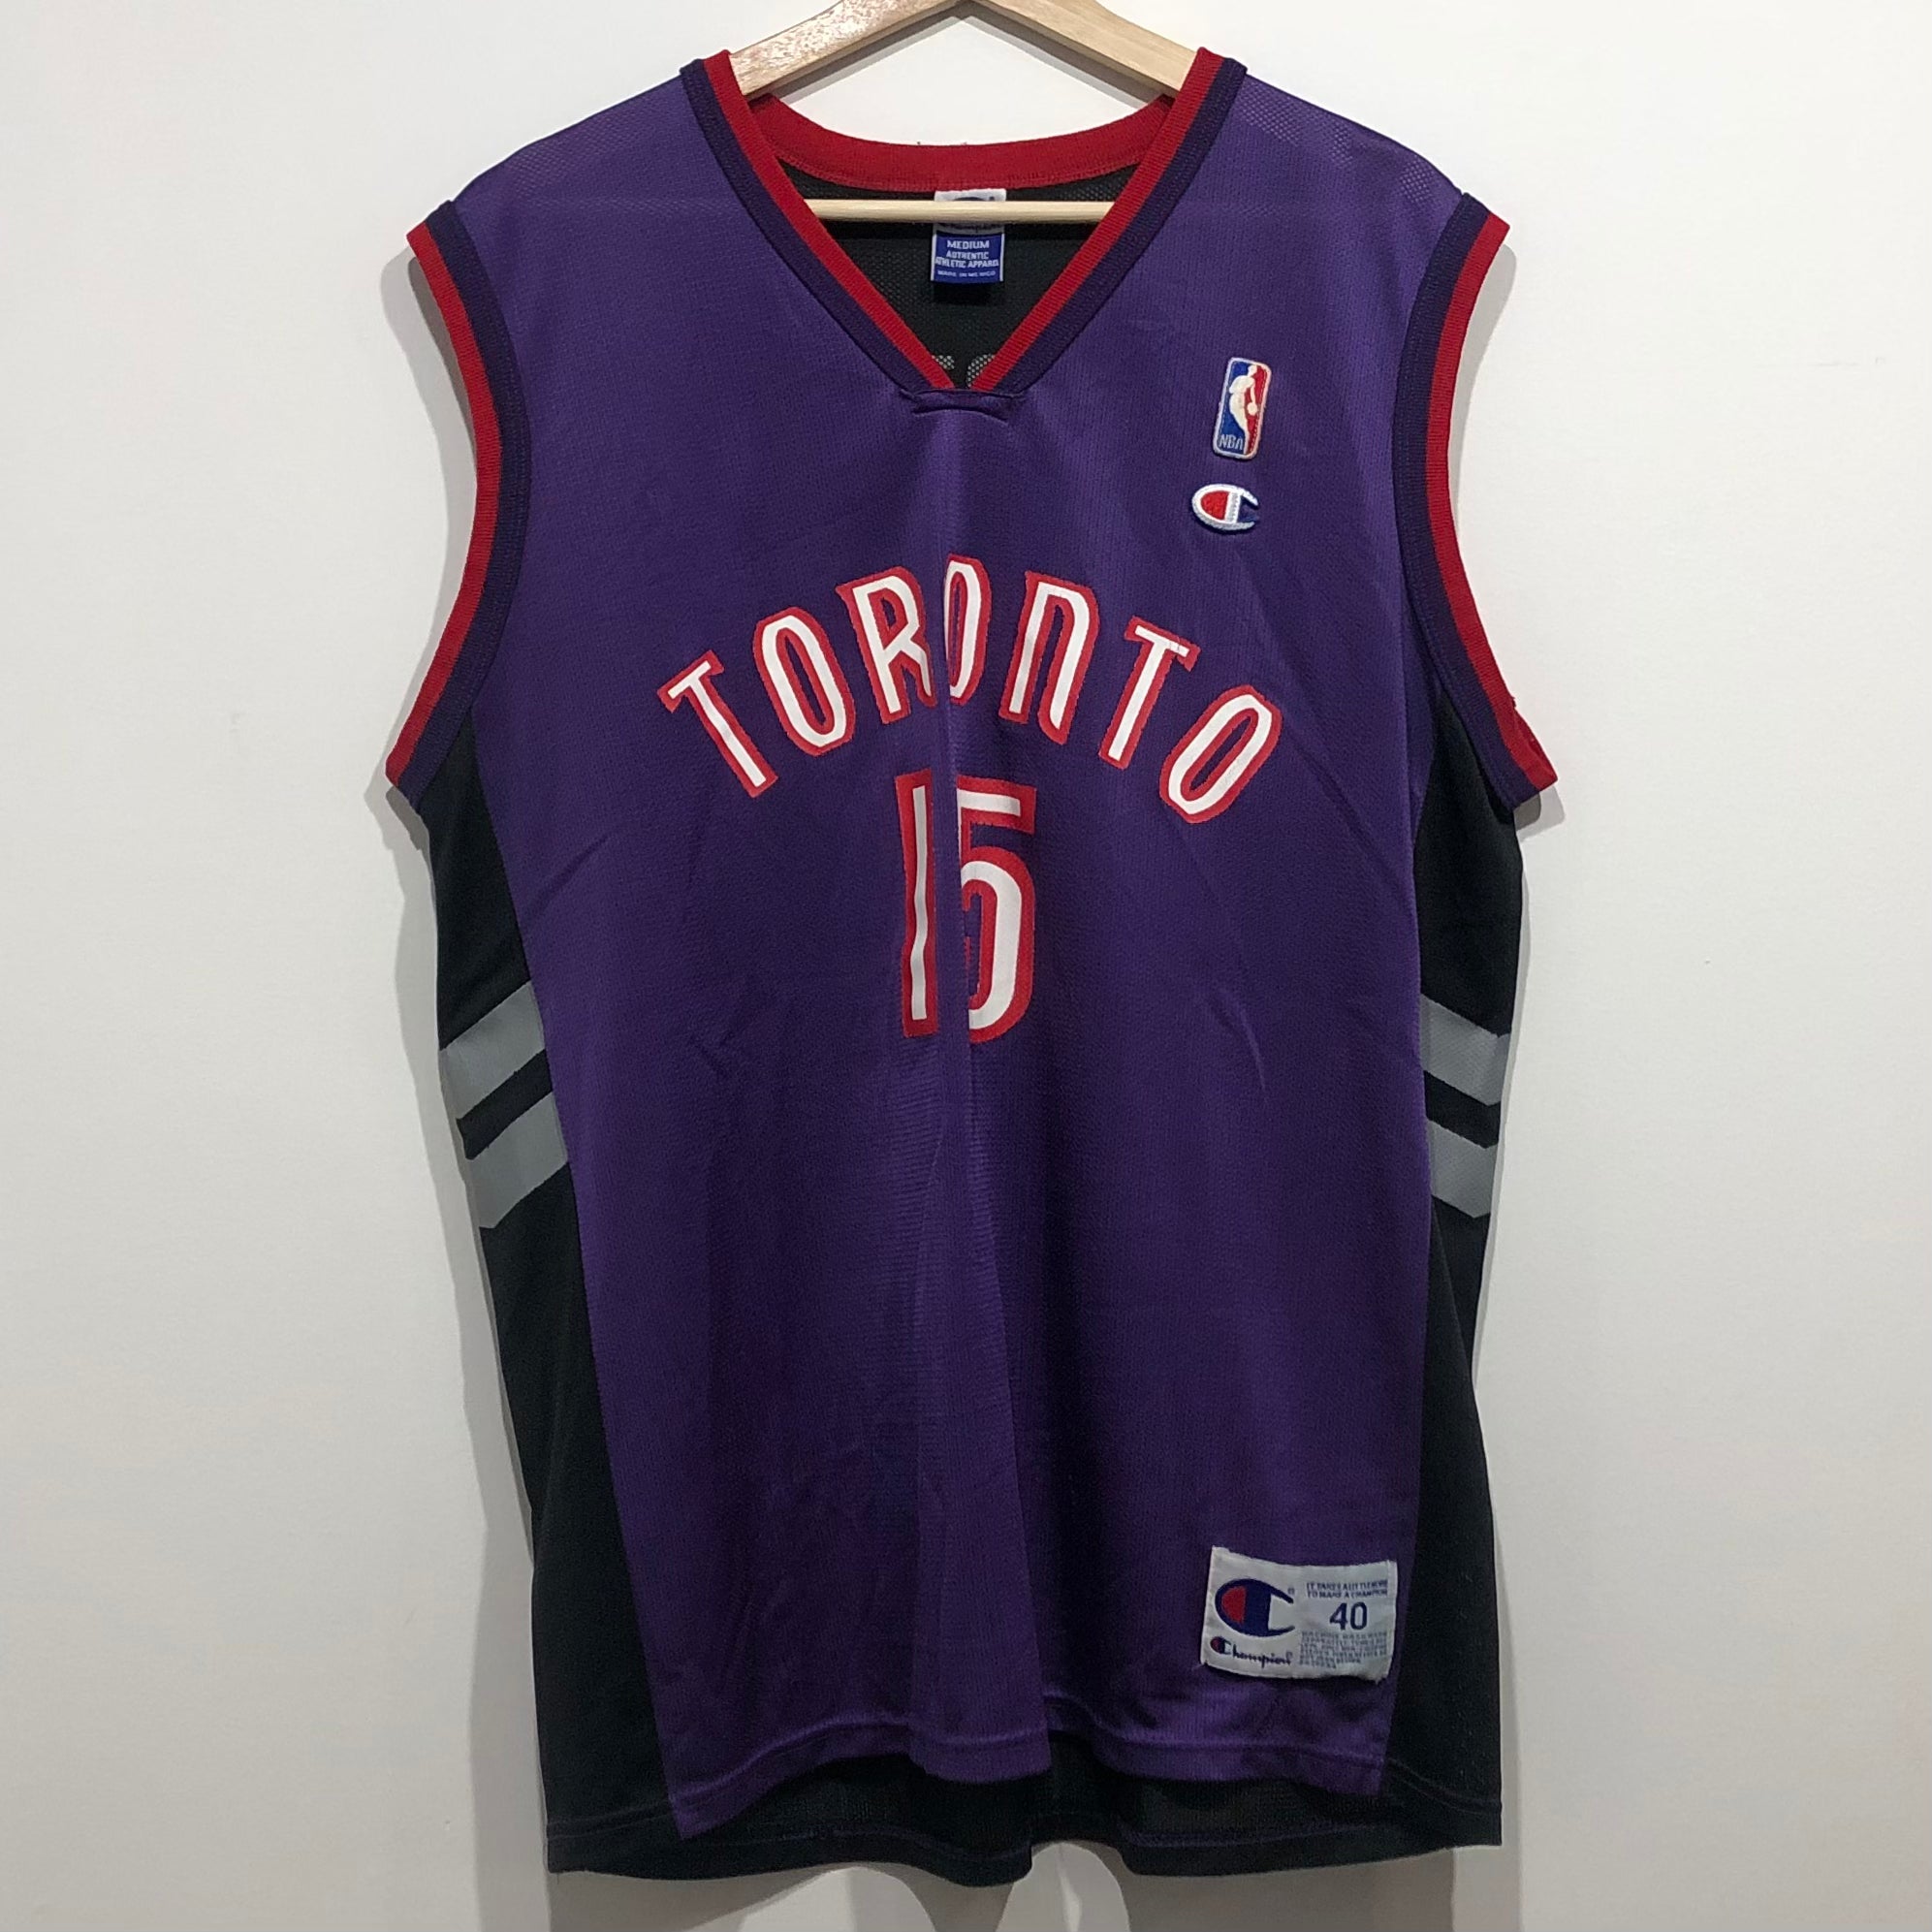 Toronto Raptors Throwback Vince Carter Basketball Jersey for Sale